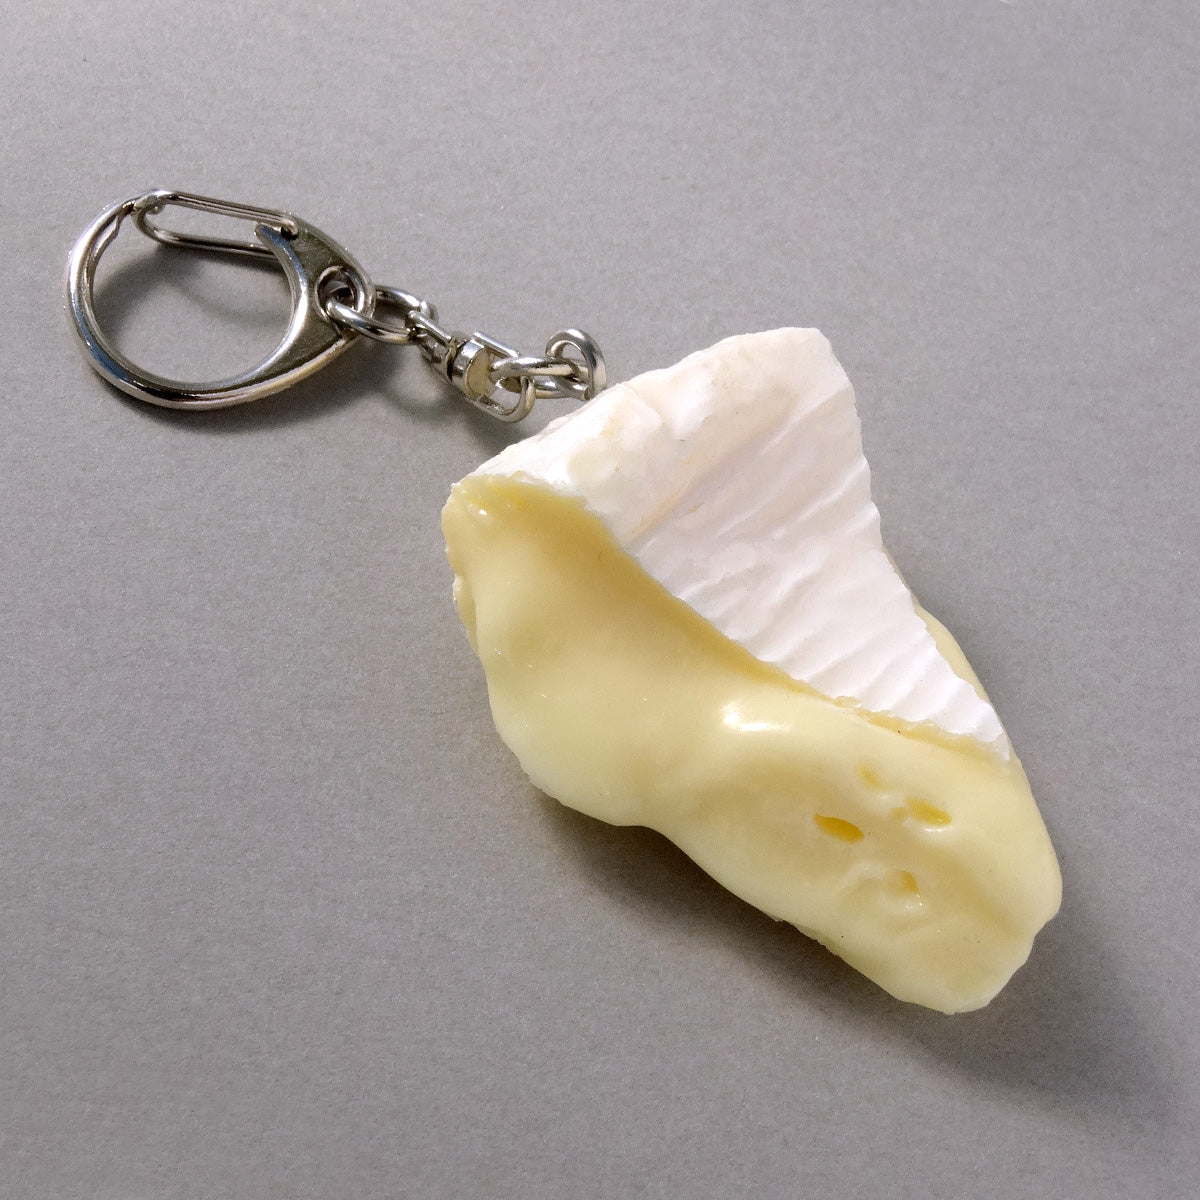 食品サンプル(IWASAKI)「カマンベールチーズのキーリング 」の商品画像です。